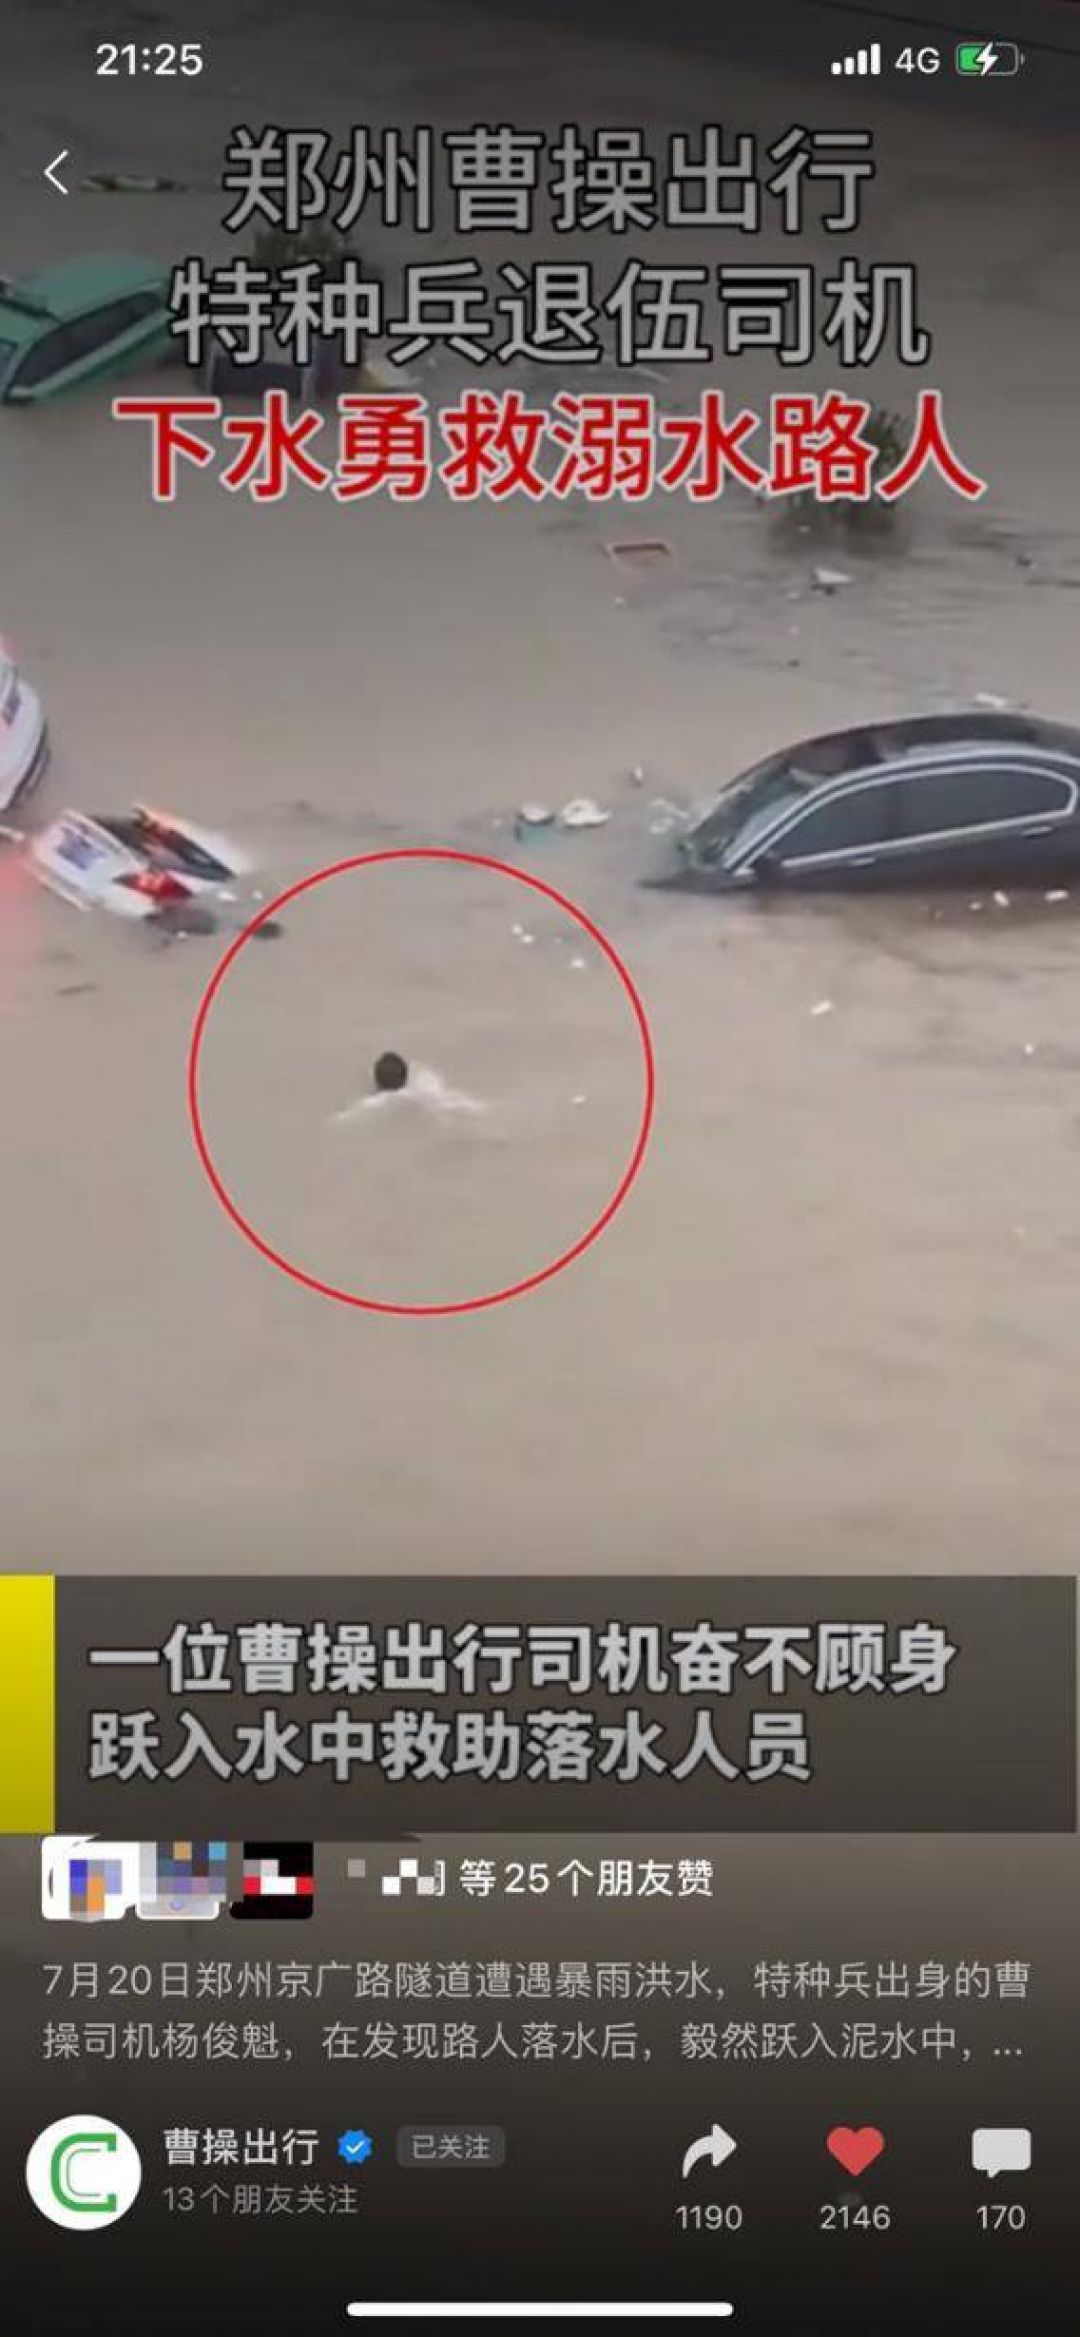 Aksi Heroik Seorang Pengemudi Mobil Online Selamatkan 5 Orang dalam Banjir Zhengzhou-Image-1